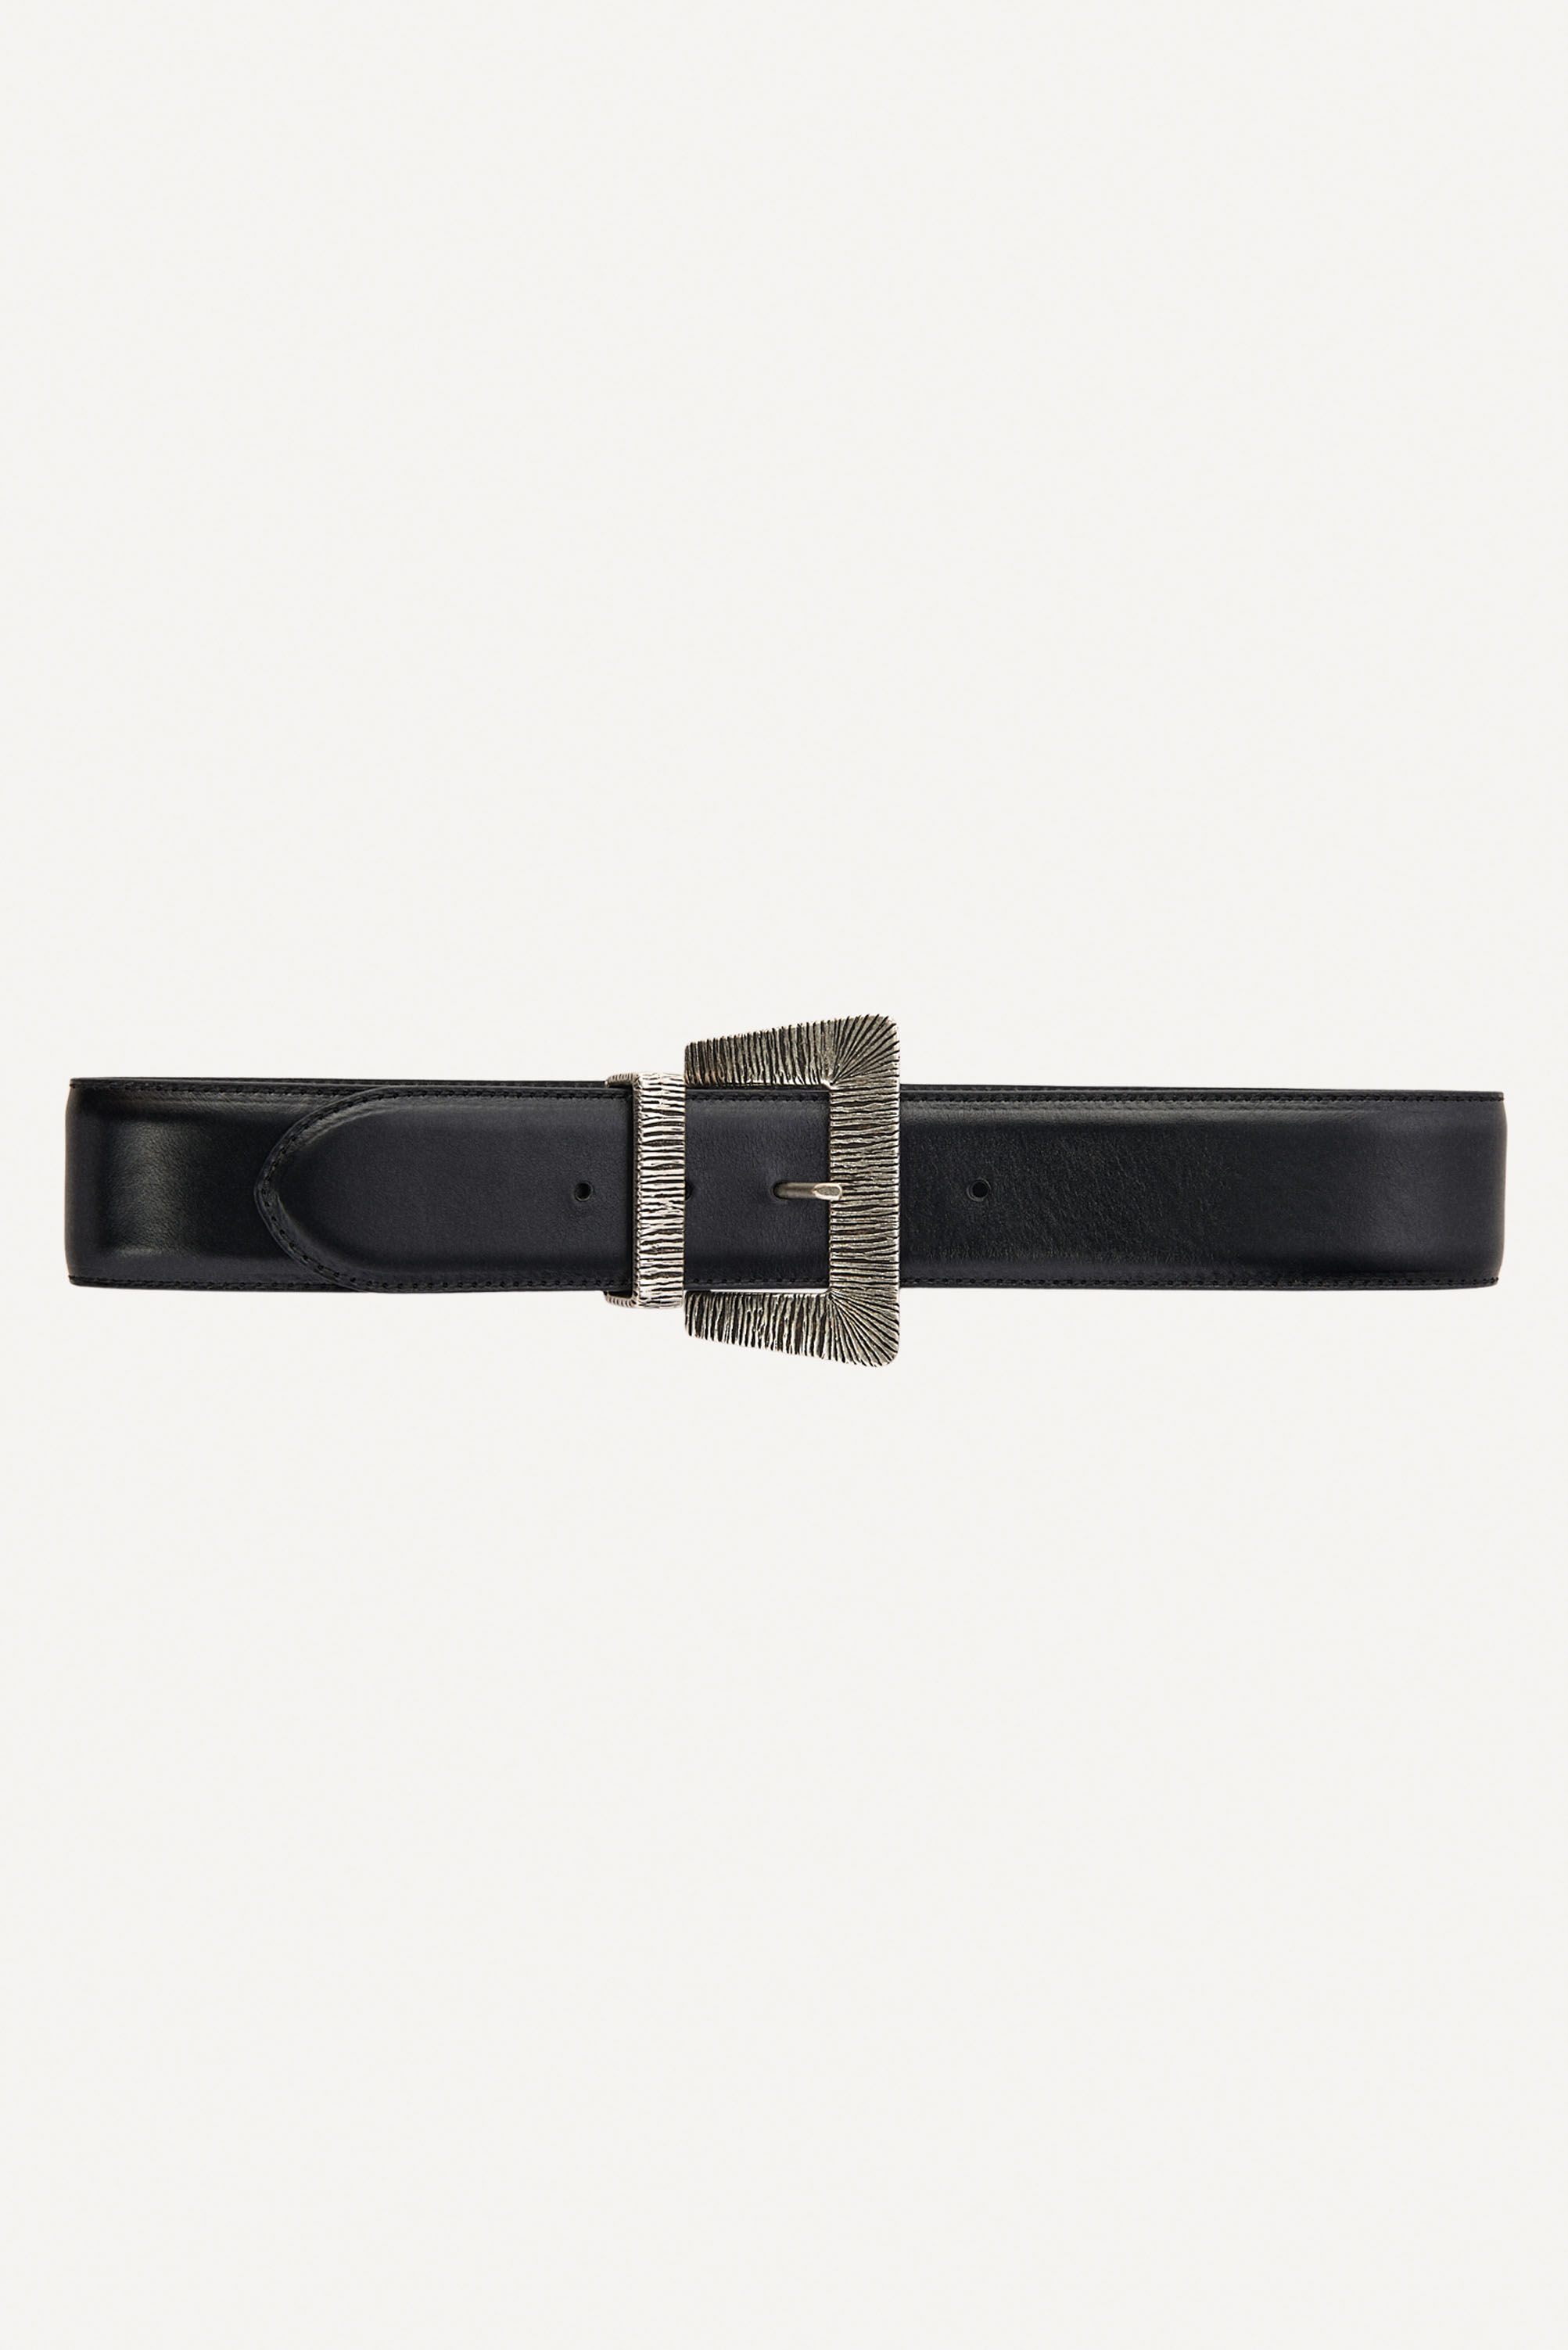 Amazon.com: XIXIDIAN Men's Belt Auto Buckle Luxury Casual Trouser Belts  Ratchet Black Waist Strap Male 3.5CM Width Fashion Belt (Color : Black,  Size : 115cm) : Clothing, Shoes & Jewelry